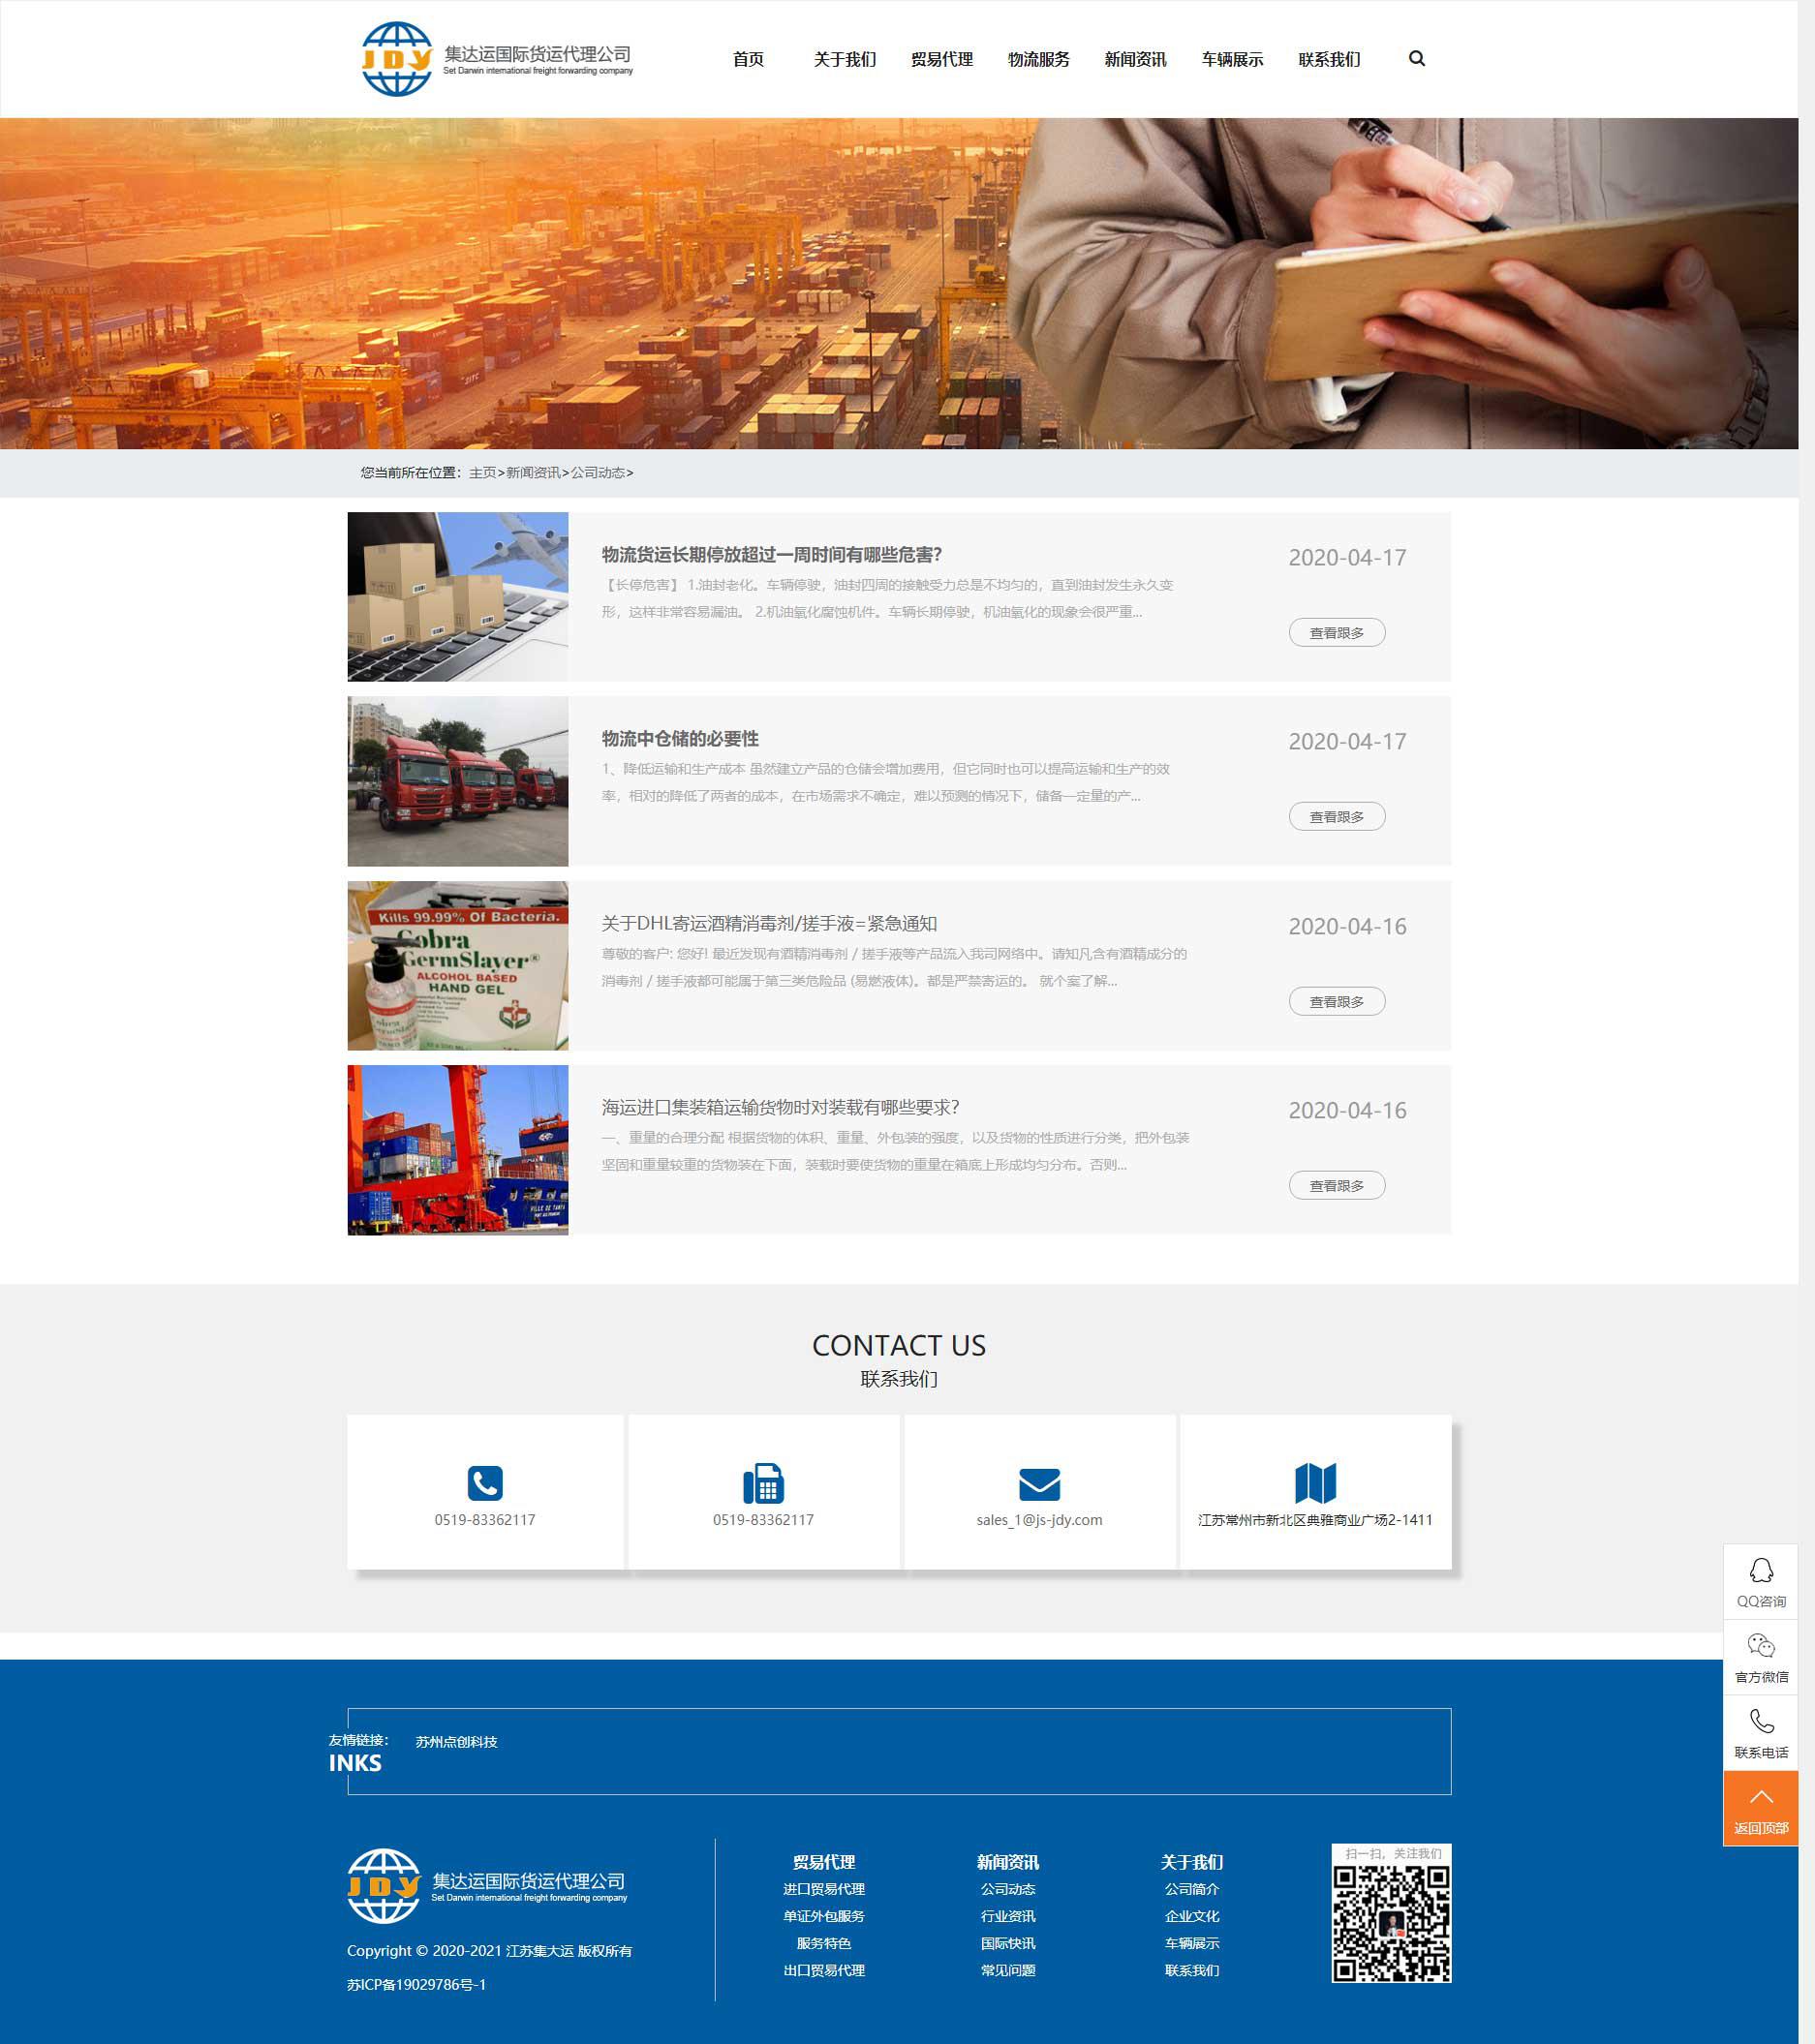 苏州网站建设公司点创科技为江苏集达运国际运输代理公司设计的新闻资讯页面